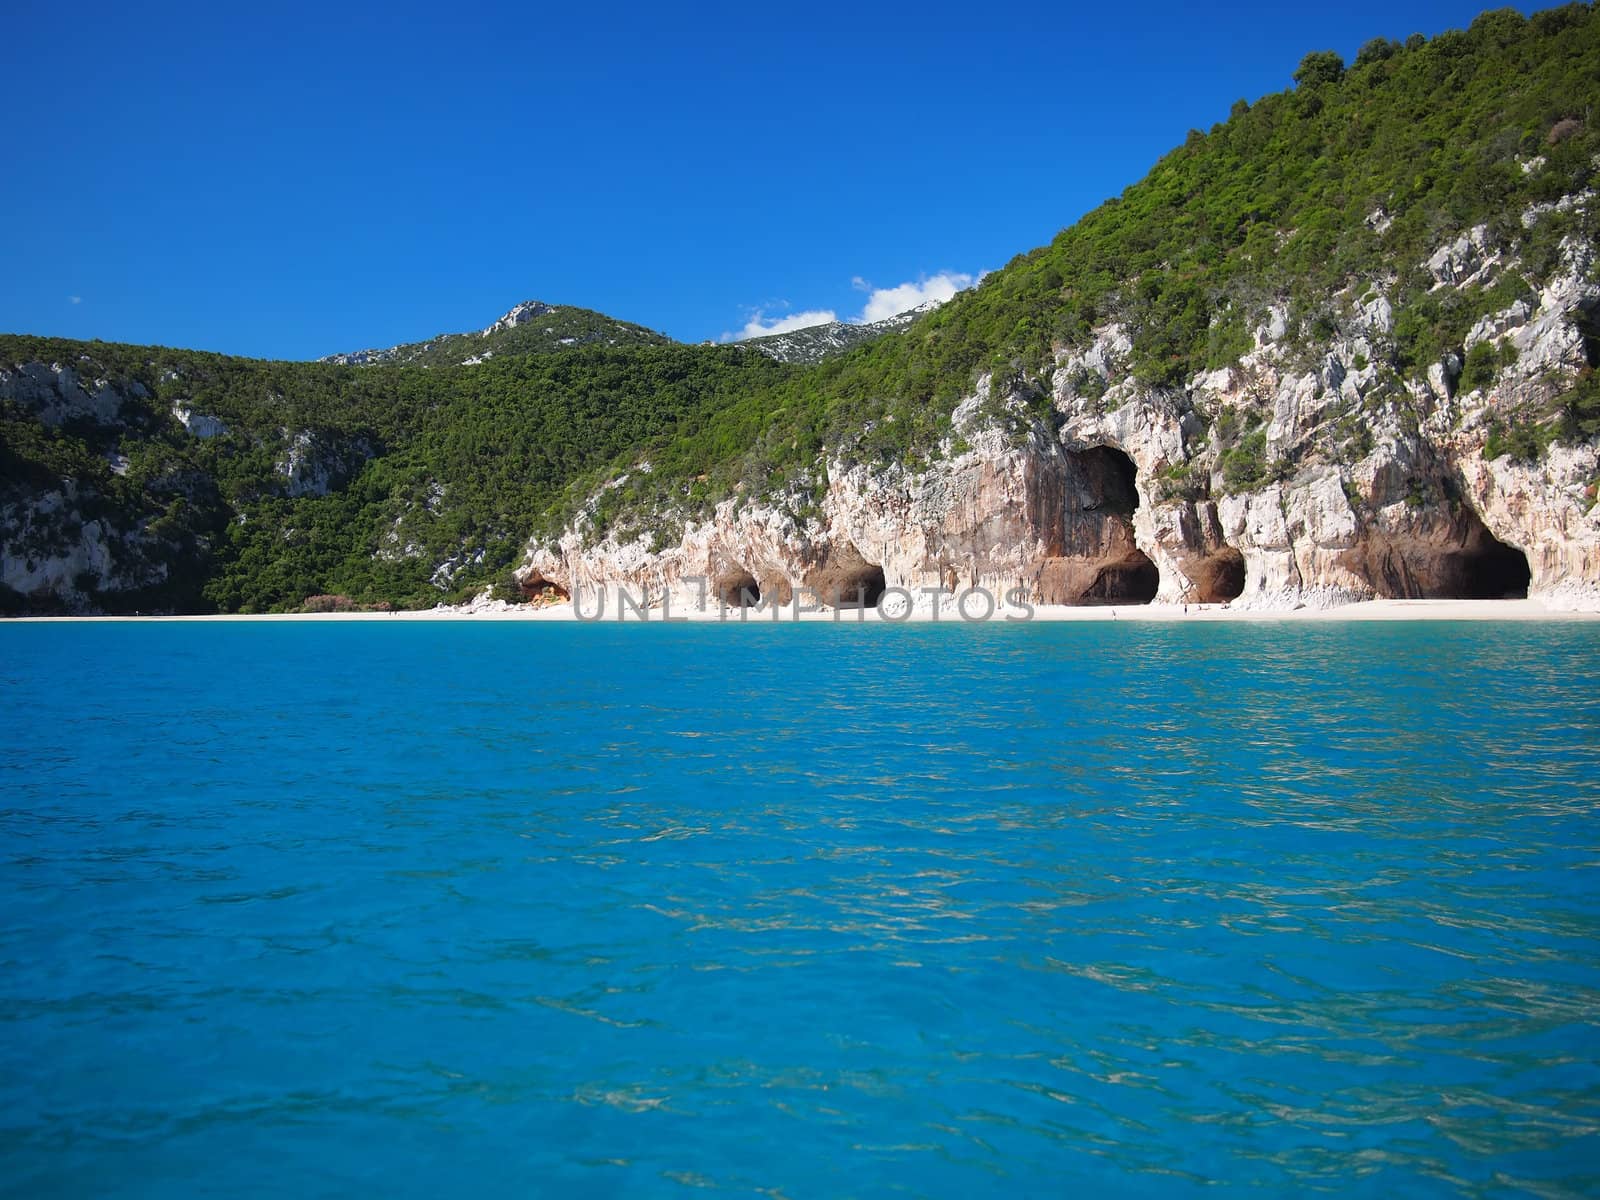 Blue sea and the characteristic caves of Cala Luna, a beach in the Golfo di Orosei, Sardinia, Italy.